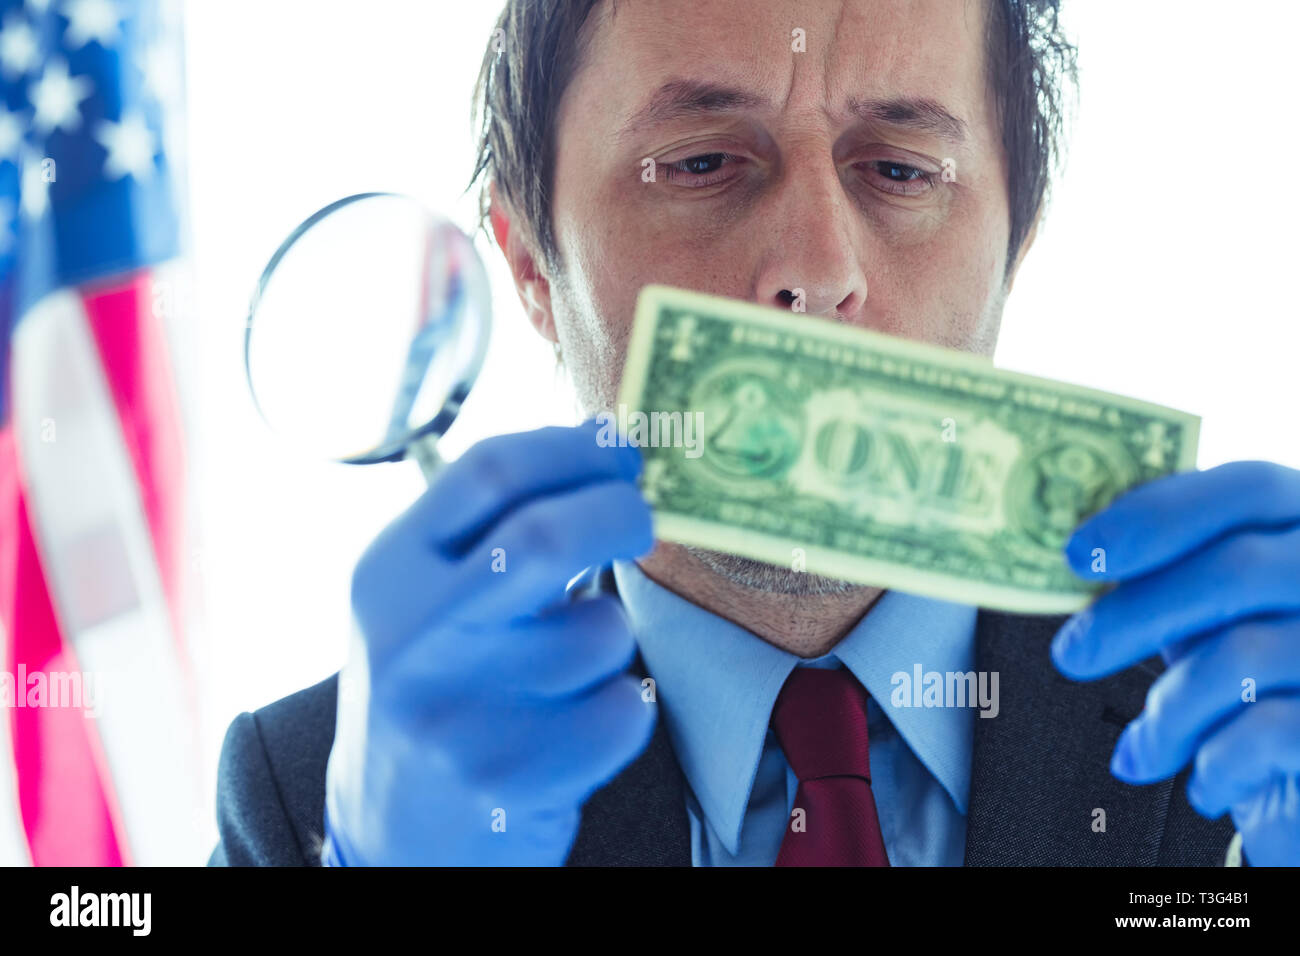 Agent des services secrets américains contrefaits suspects analyse dollar bill, conceptual image avec selective focus Banque D'Images